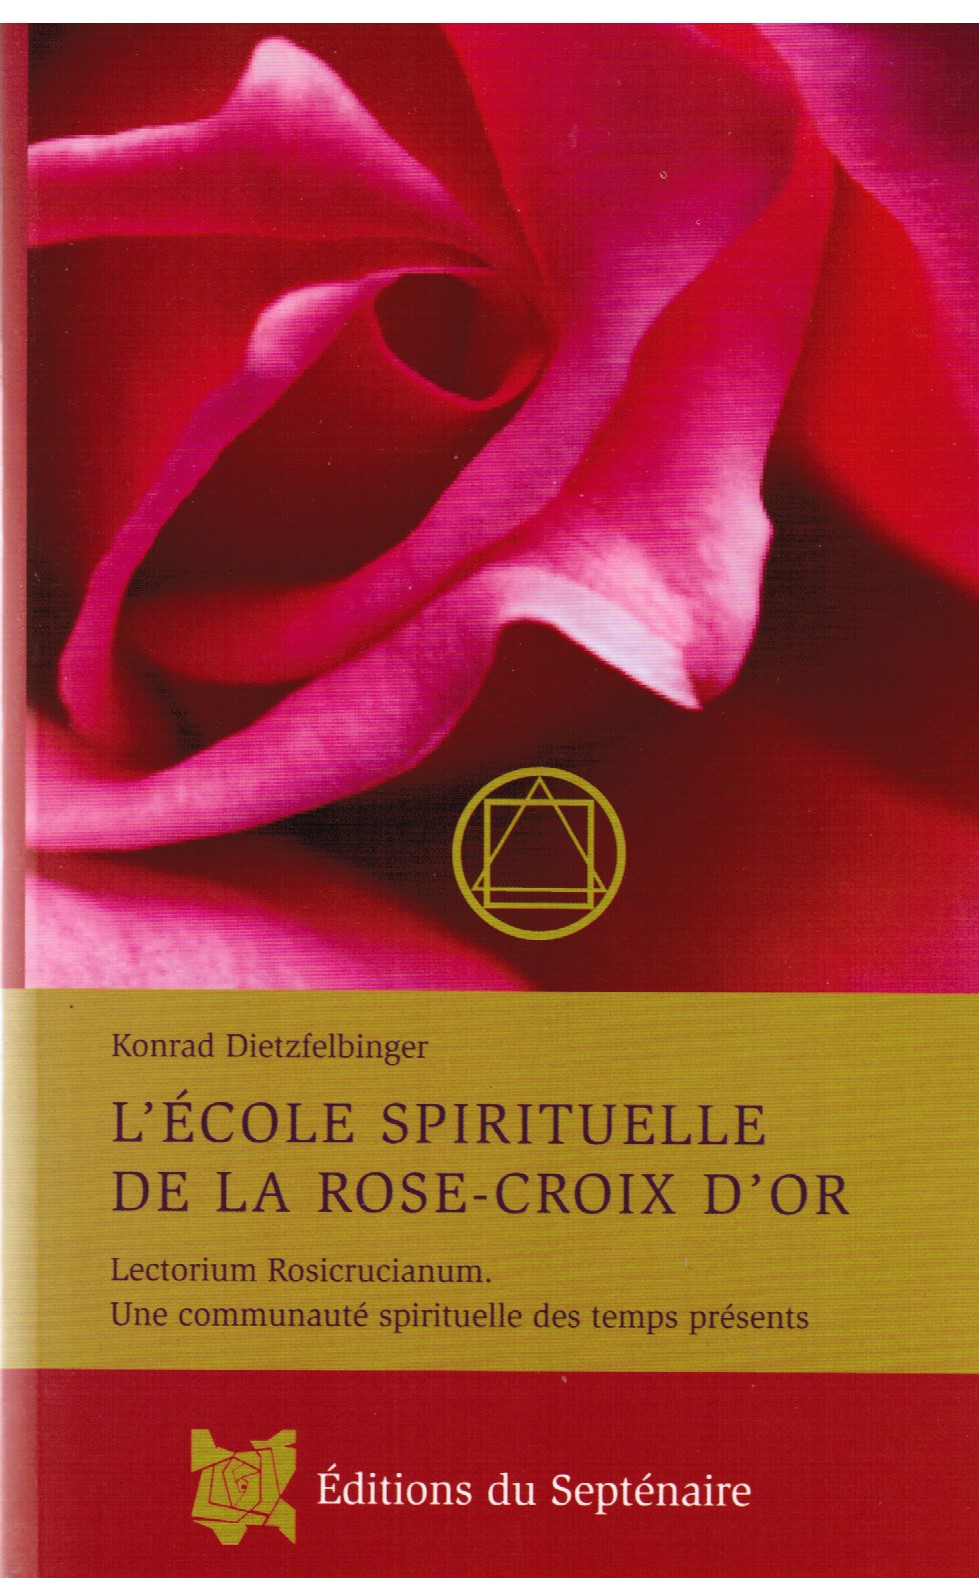  L'École Spirituelle de la Rose-Croix d'Or (franc.)